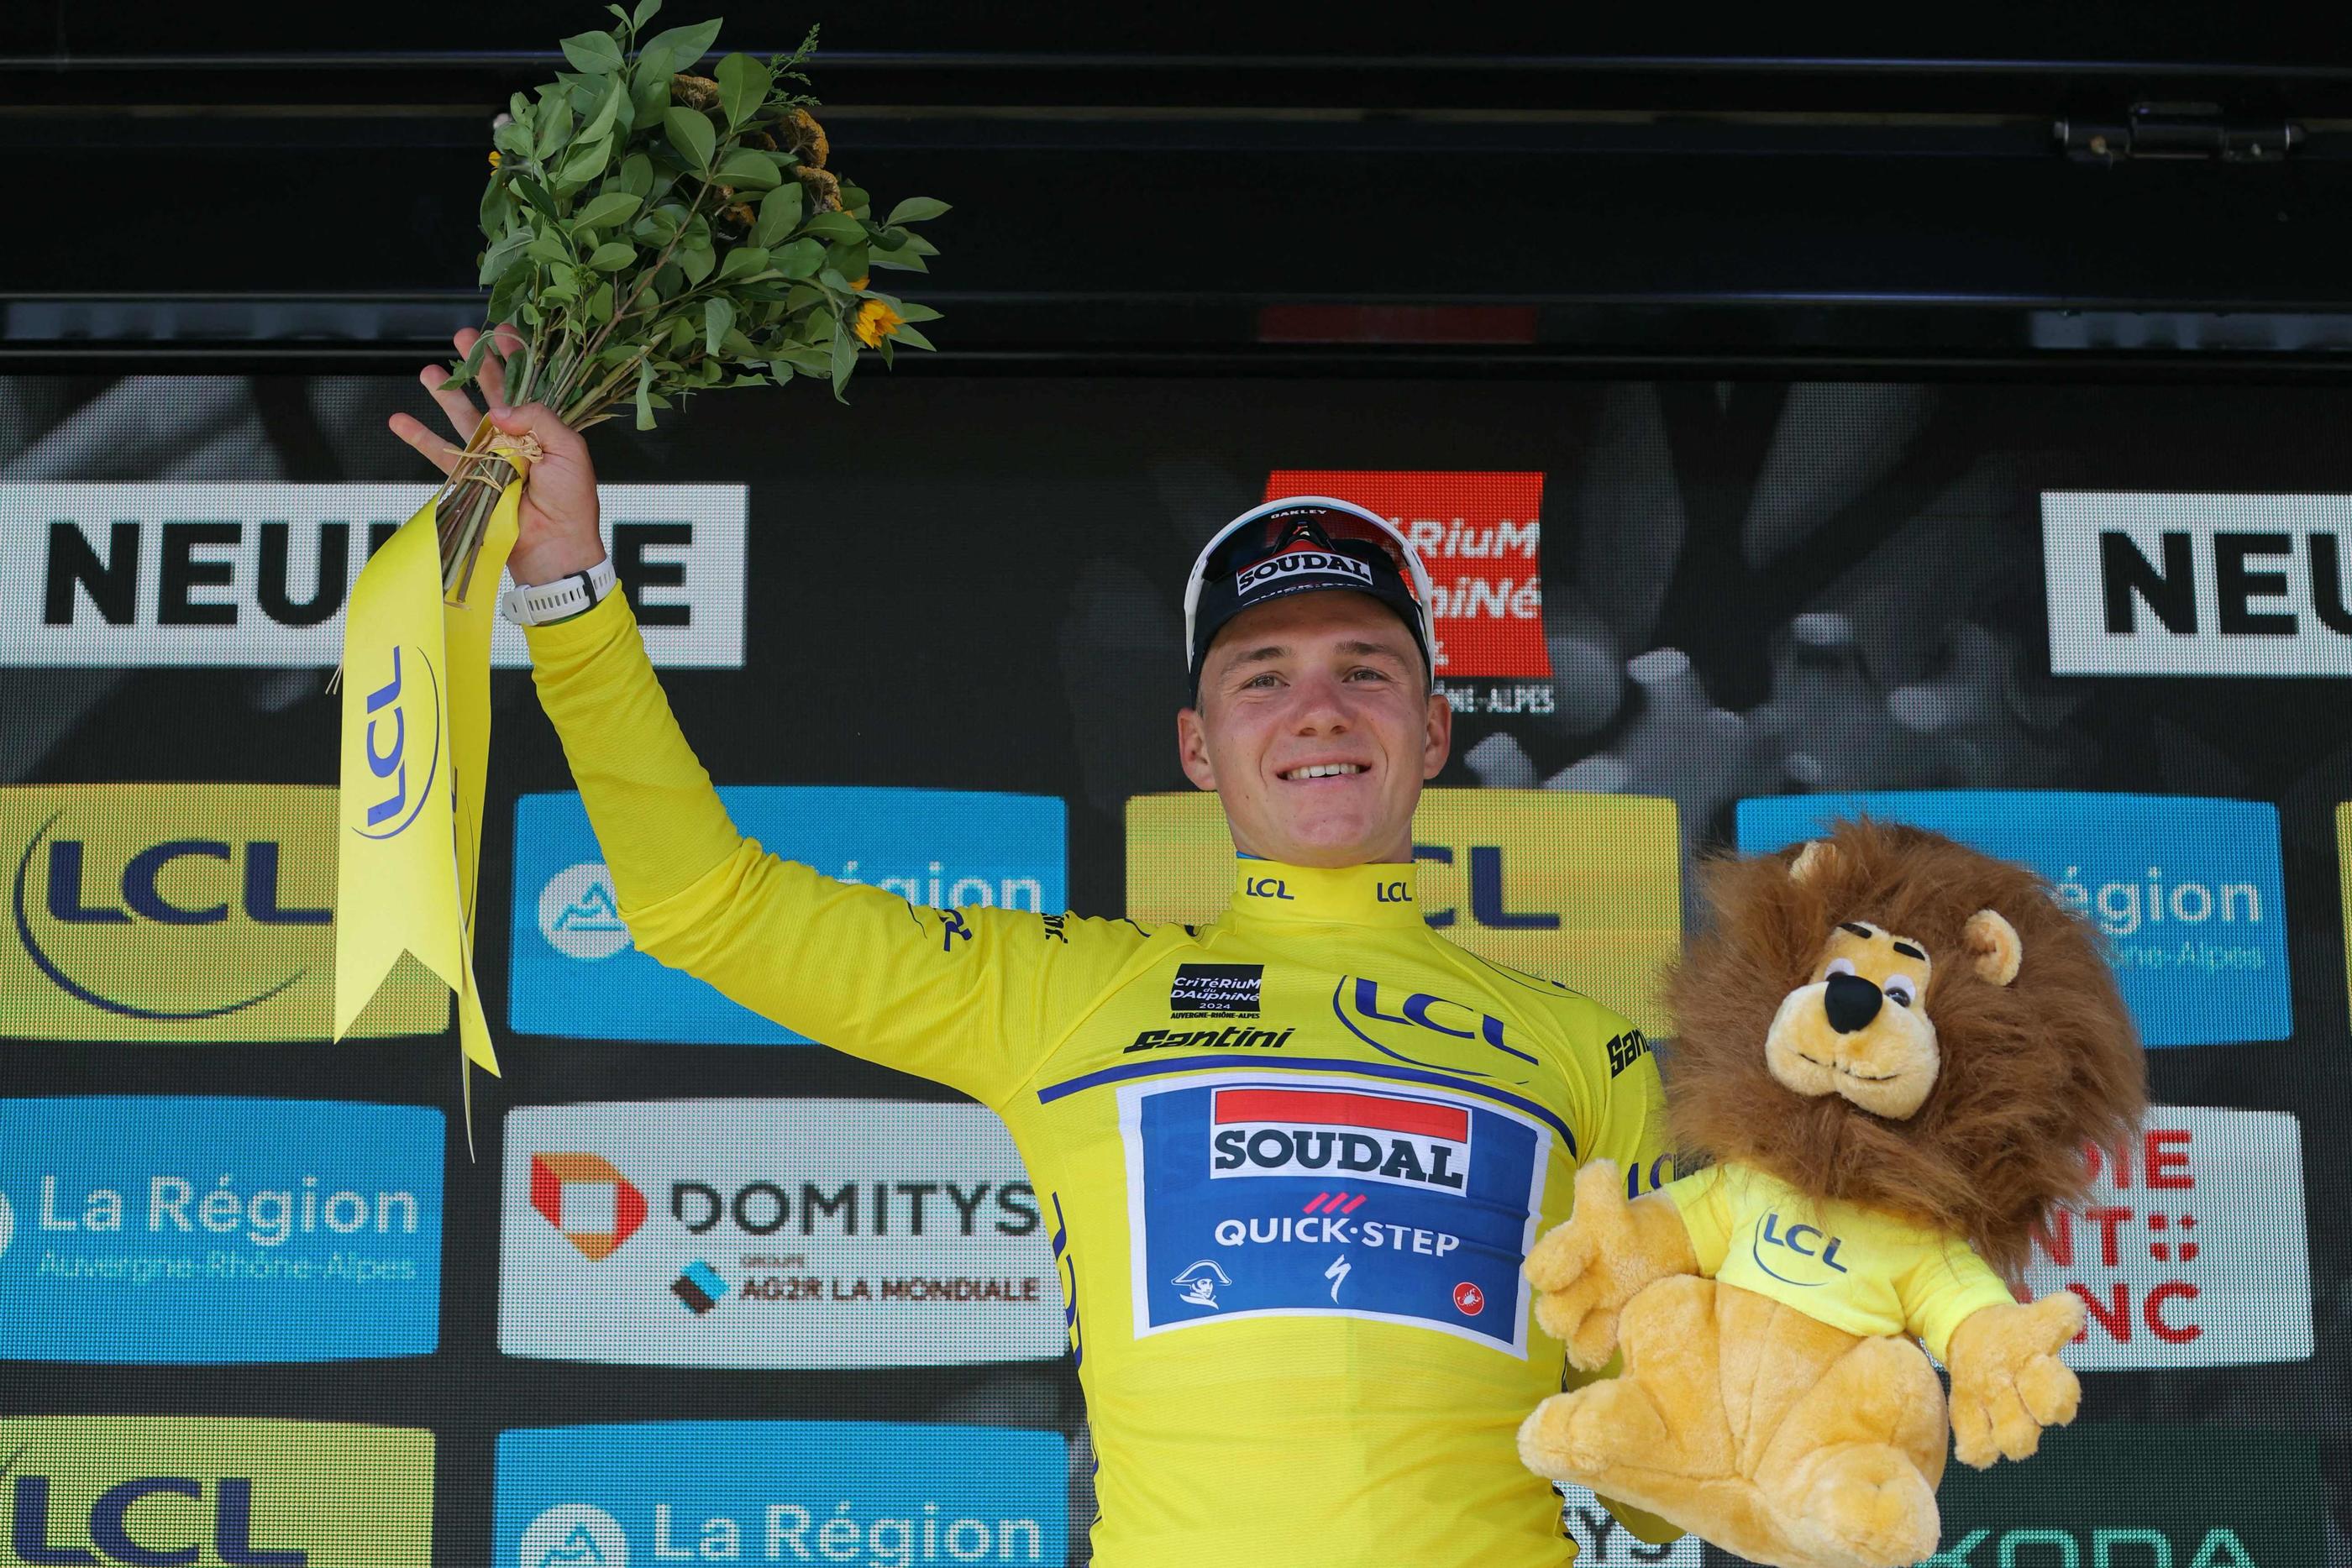 Pour la première fois sur une course française, Remco Evenepoel enfile un maillot jaune. Un signe en vue de cet été ? AFP/Thomas Samson